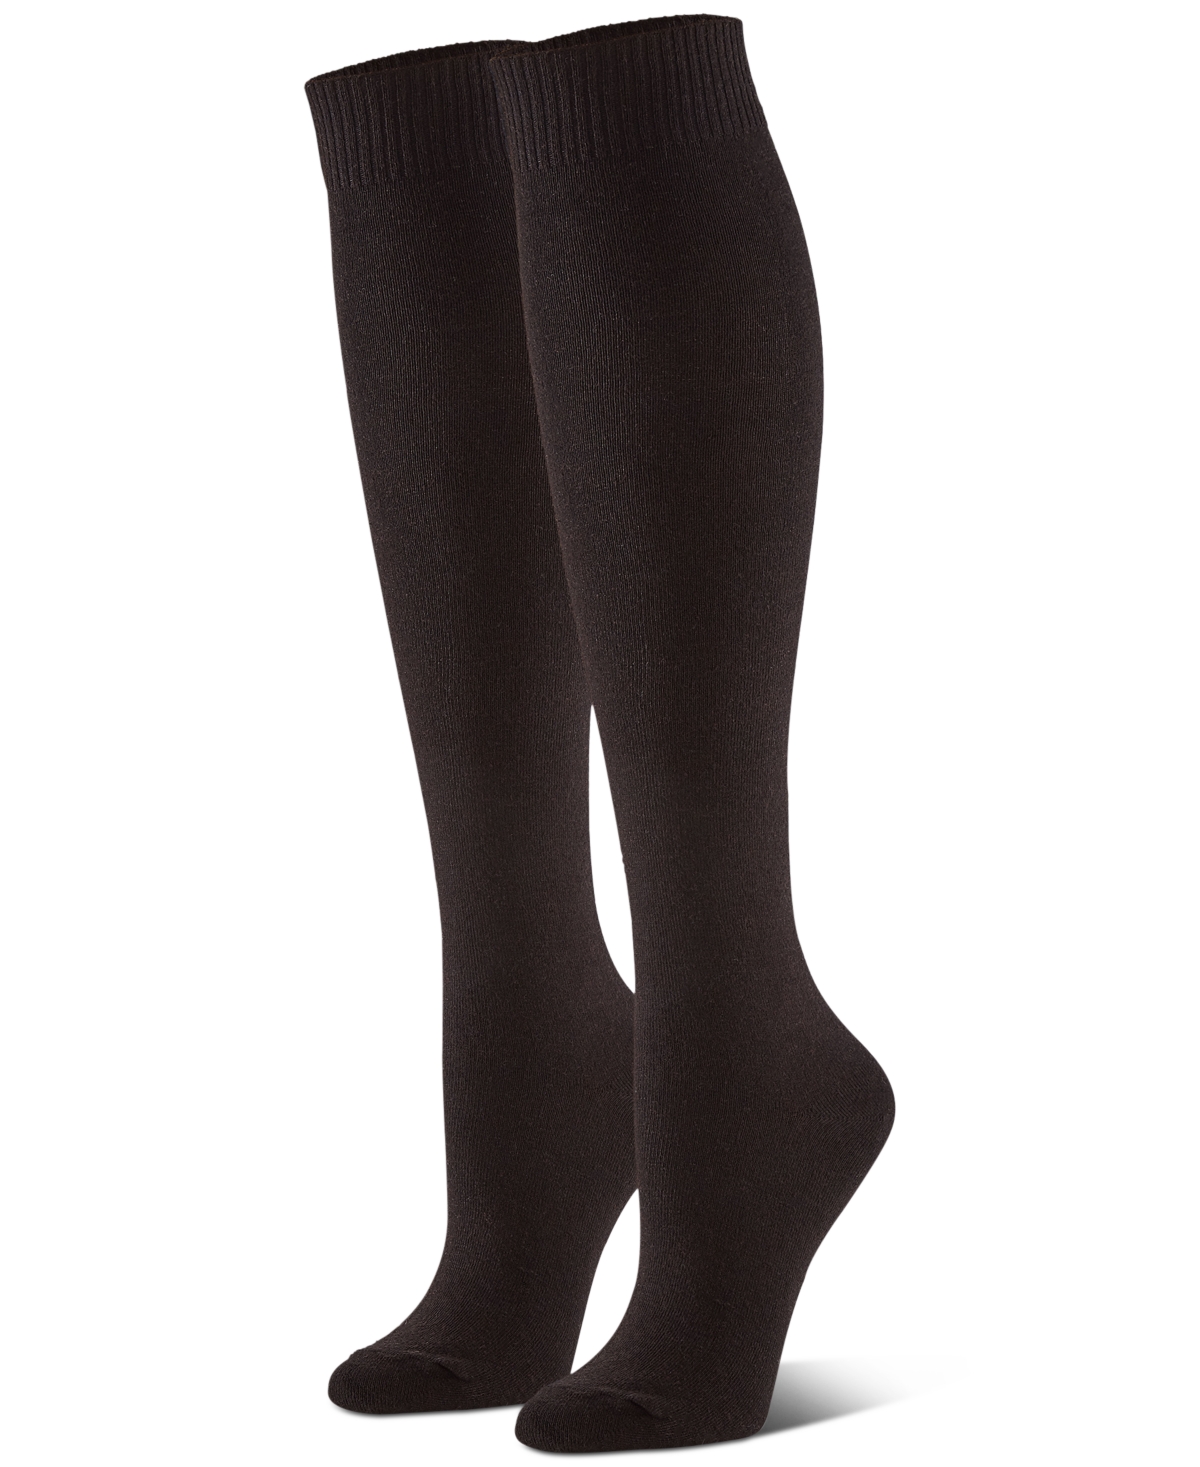 Women's Flat Knit Knee High Socks 3 Pair Pack - White Pack